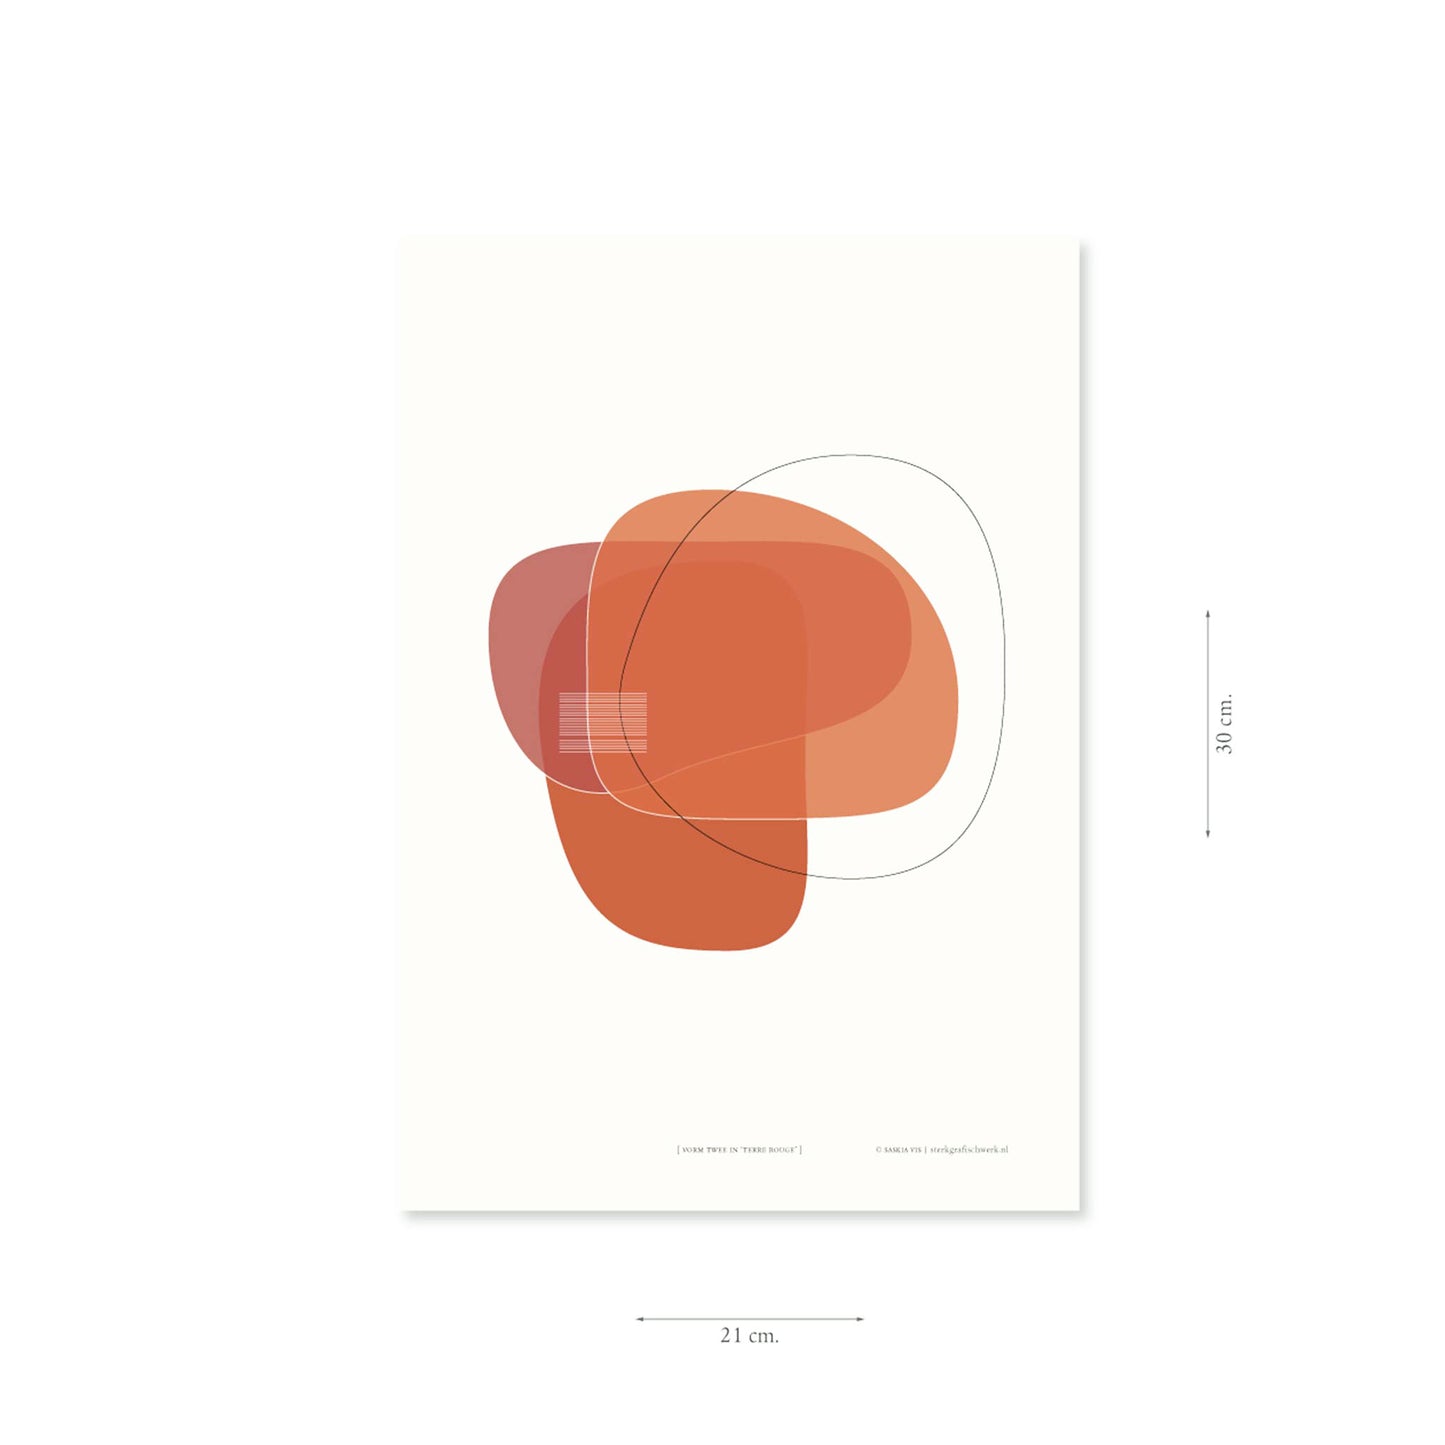 Productafbeelding poster "vorm twee in terre rouge" met aanduiding van het formaat erop weergegeven 21 x 30 cm